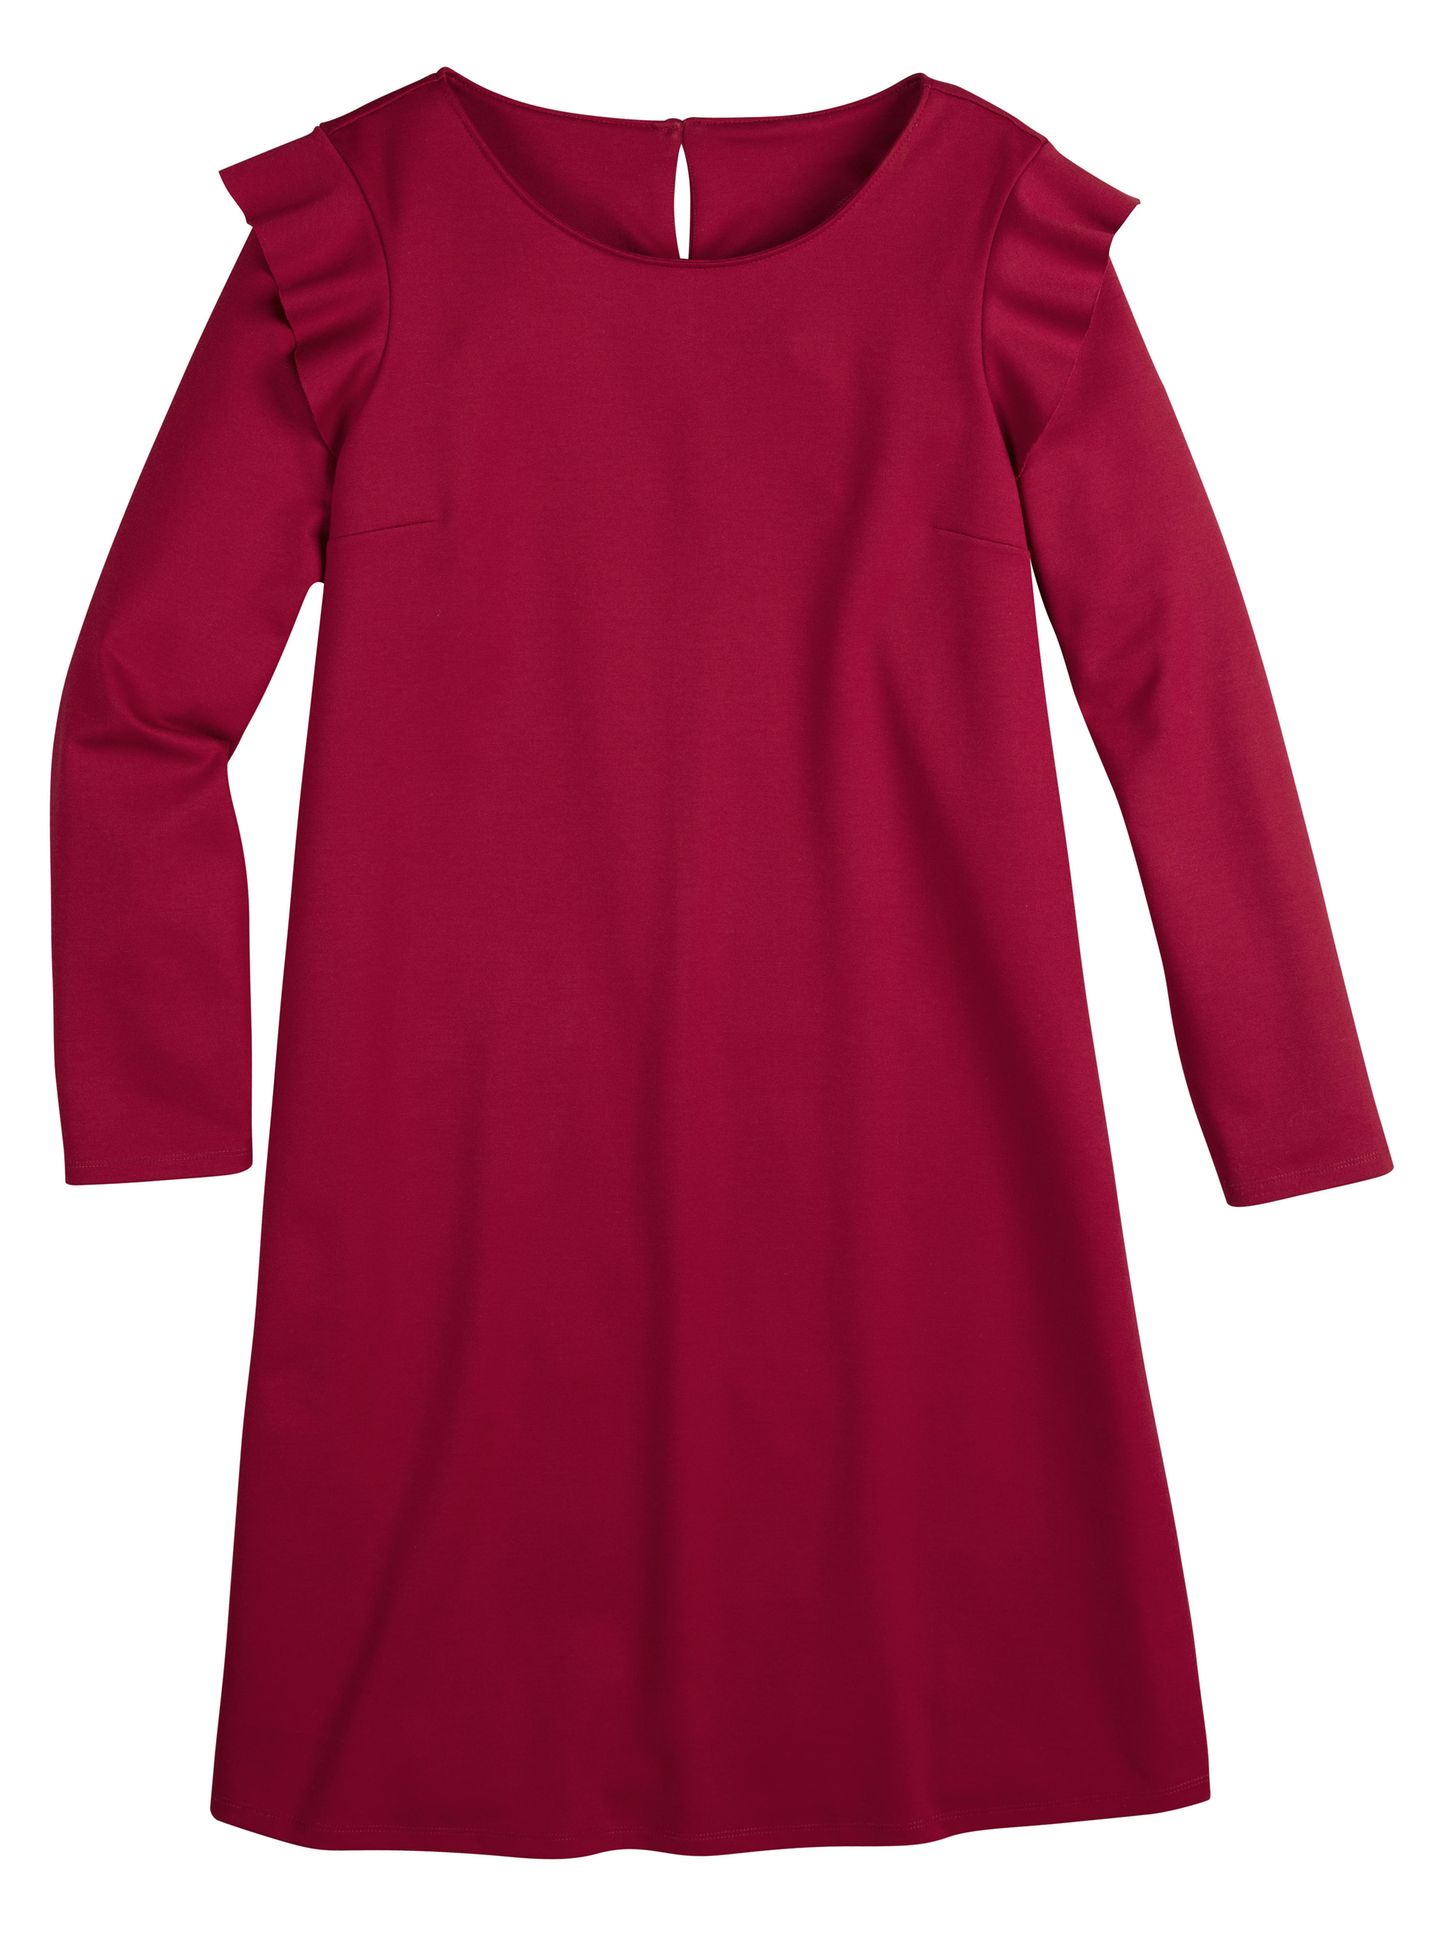 Rotes Kleid mit Volant an der Schulter, 14,99 Euro.